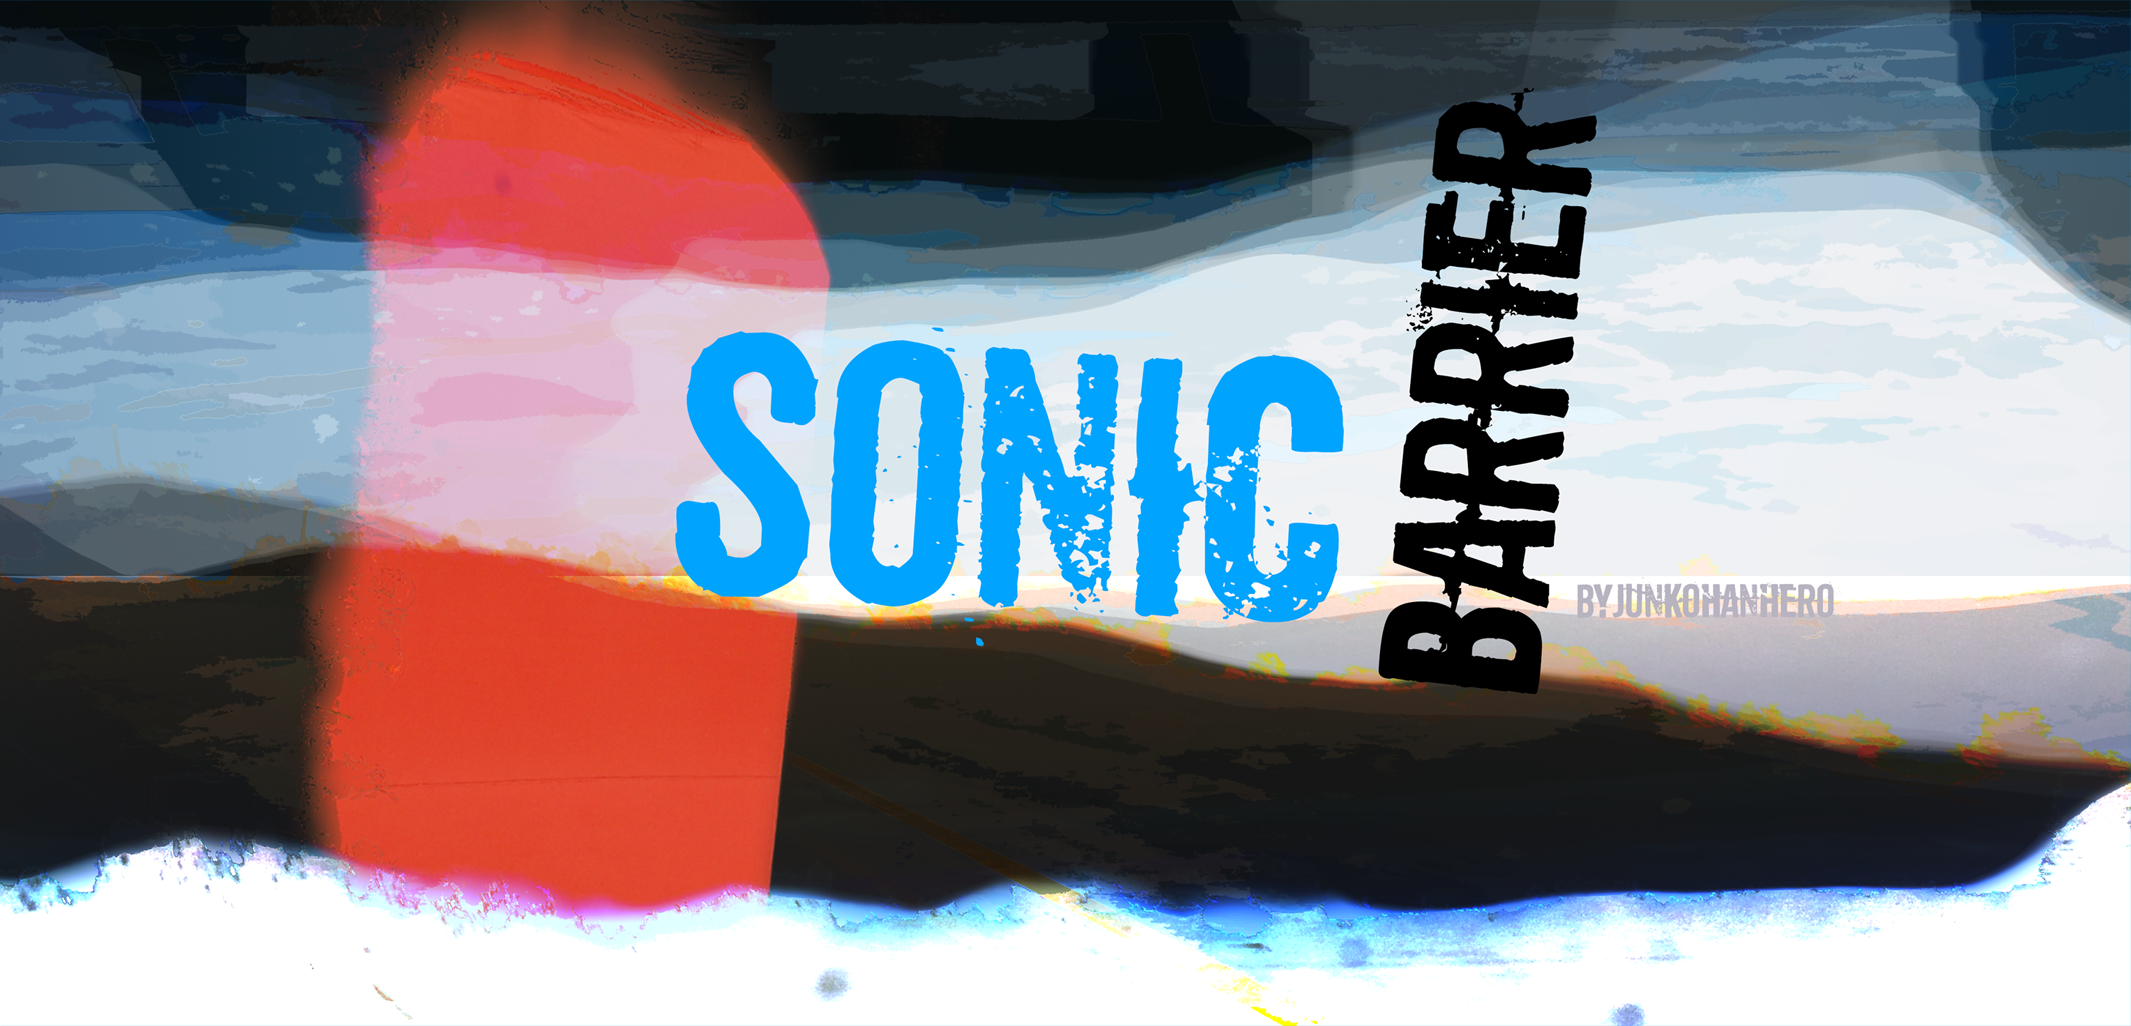 Sonic Barrier